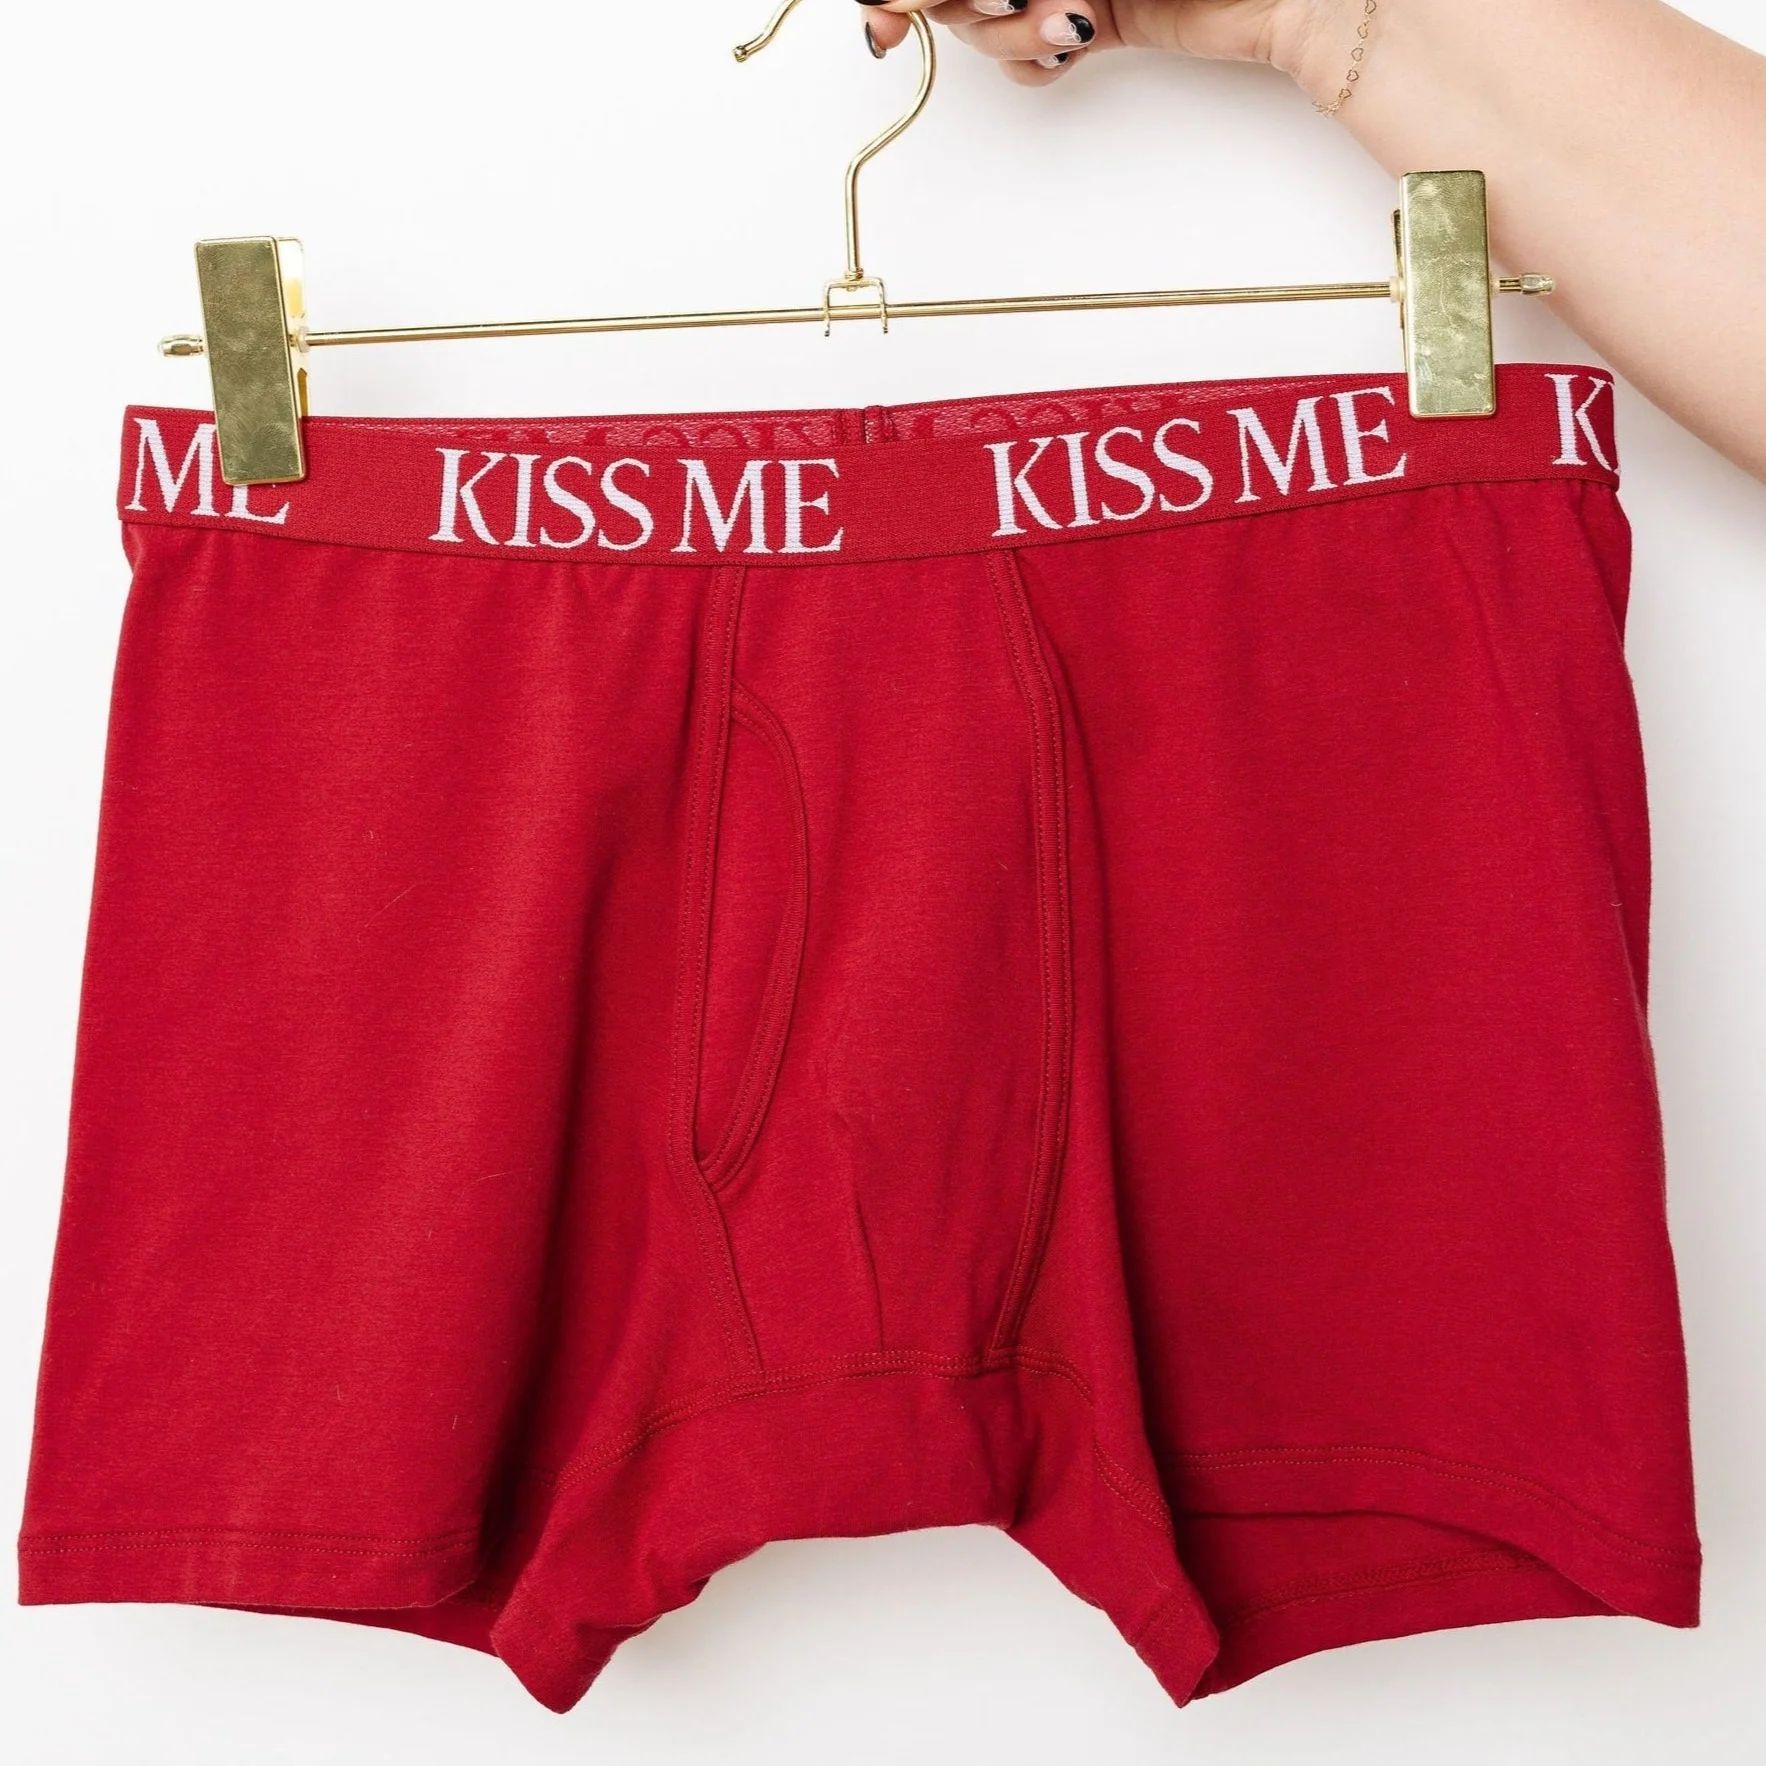 Men's Kiss Me Boxer Briefs - Red | Mentionables